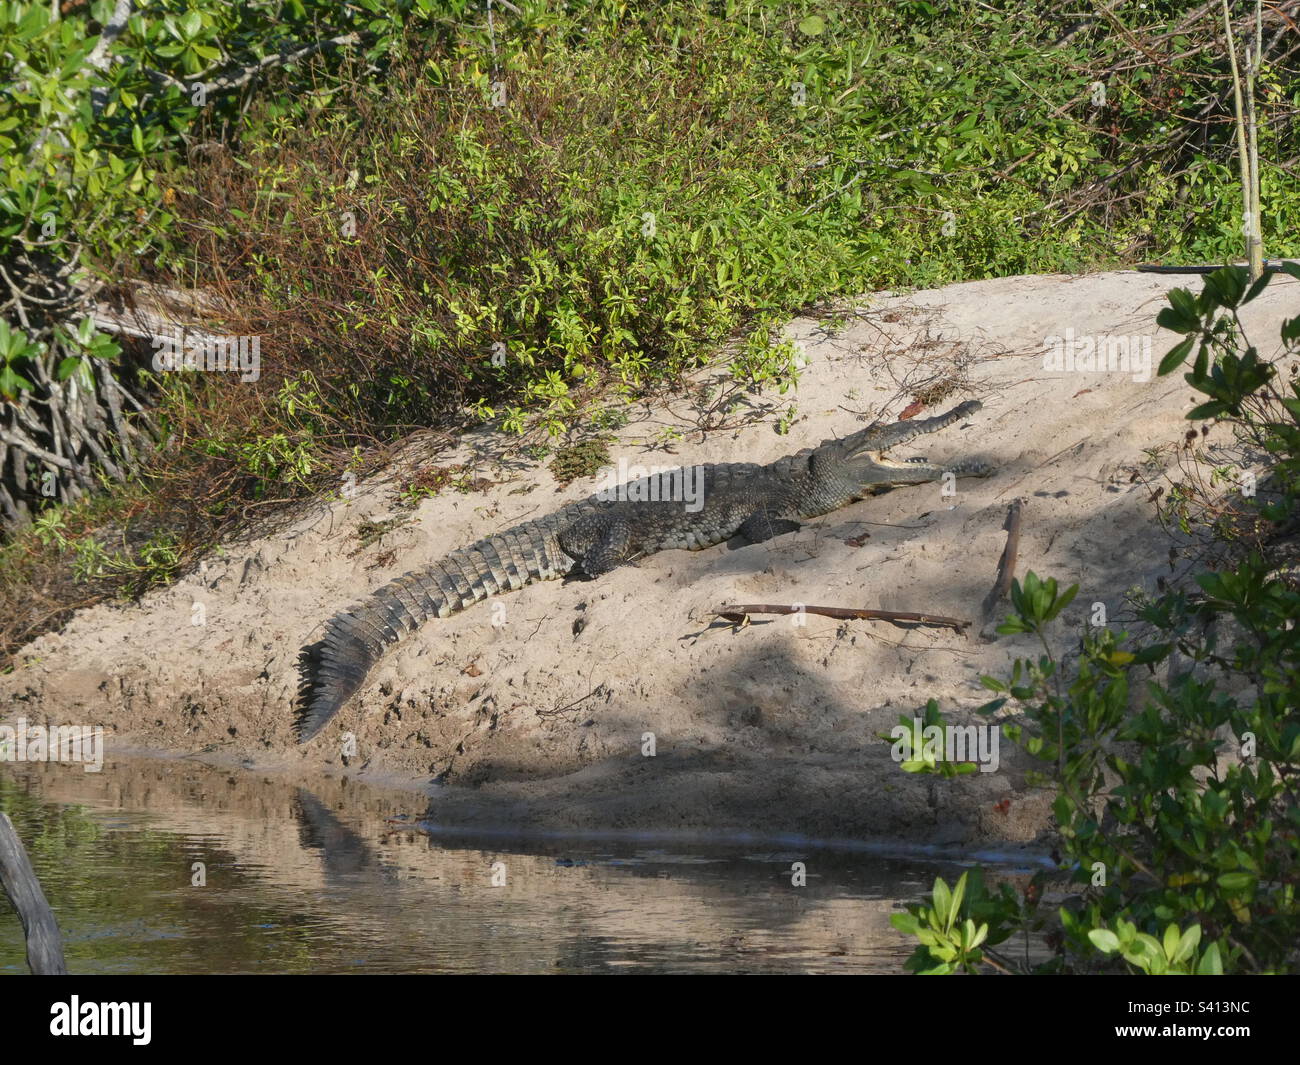 A saltwater crocodile sits on a sandbank in the sun near Nosara in Costa Rica Stock Photo